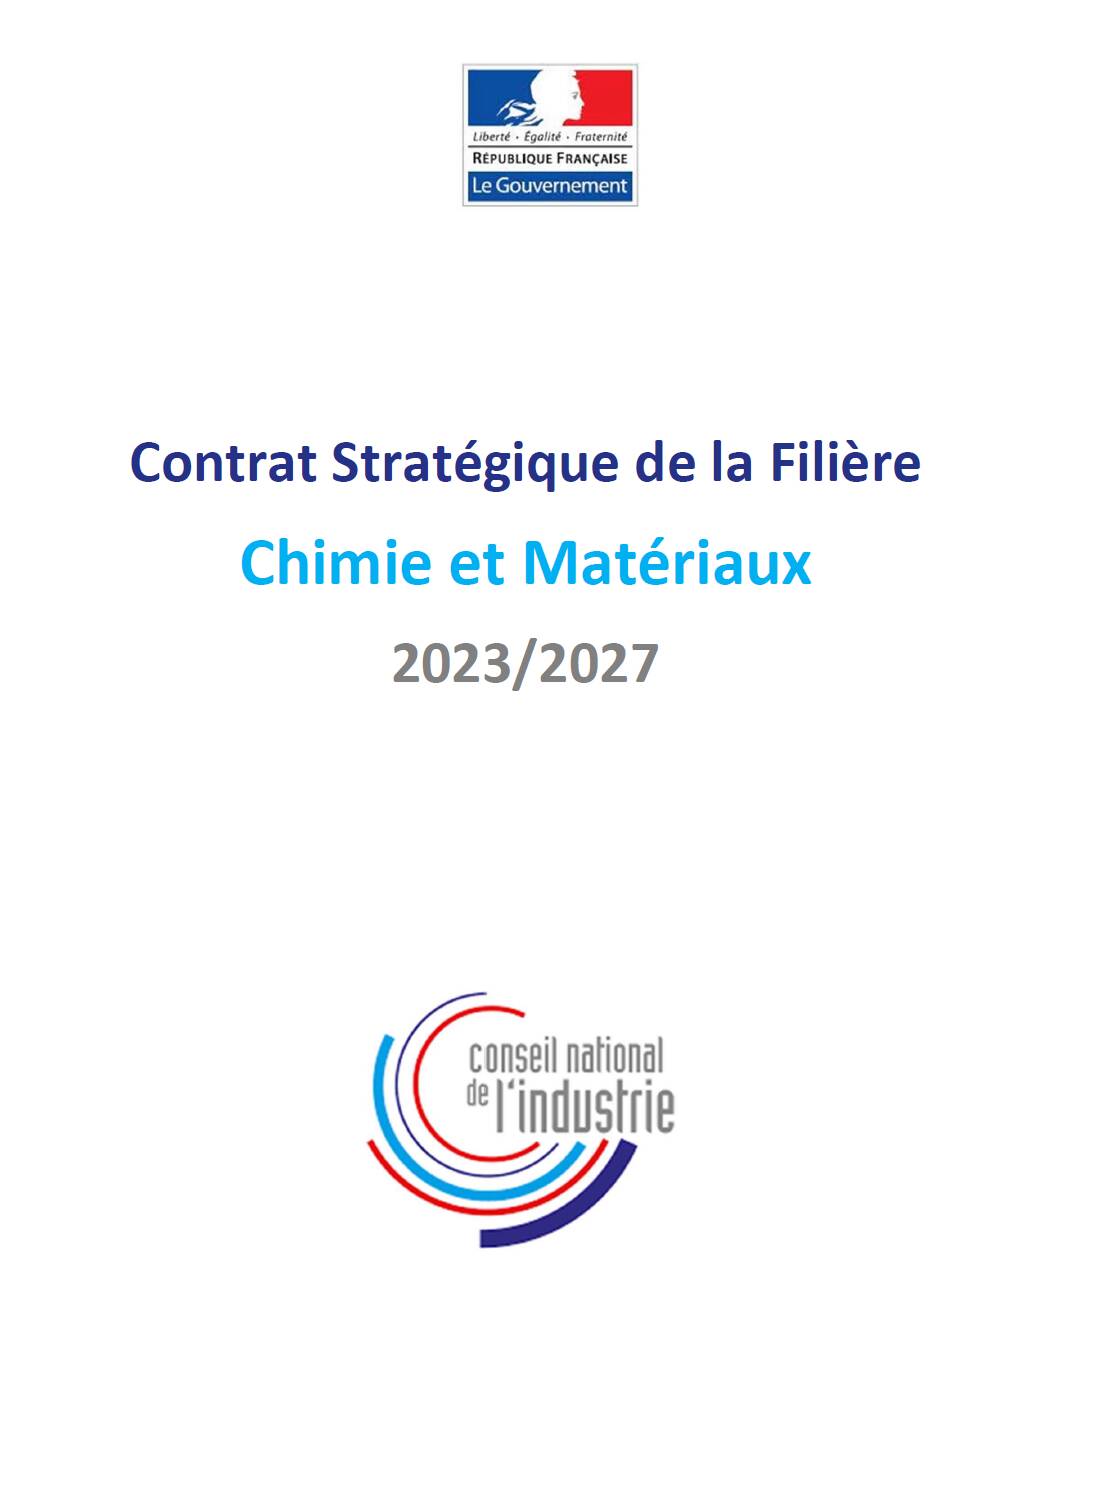 Contrat Stratégique de la Filière Chimie et Matériaux 2023/2027